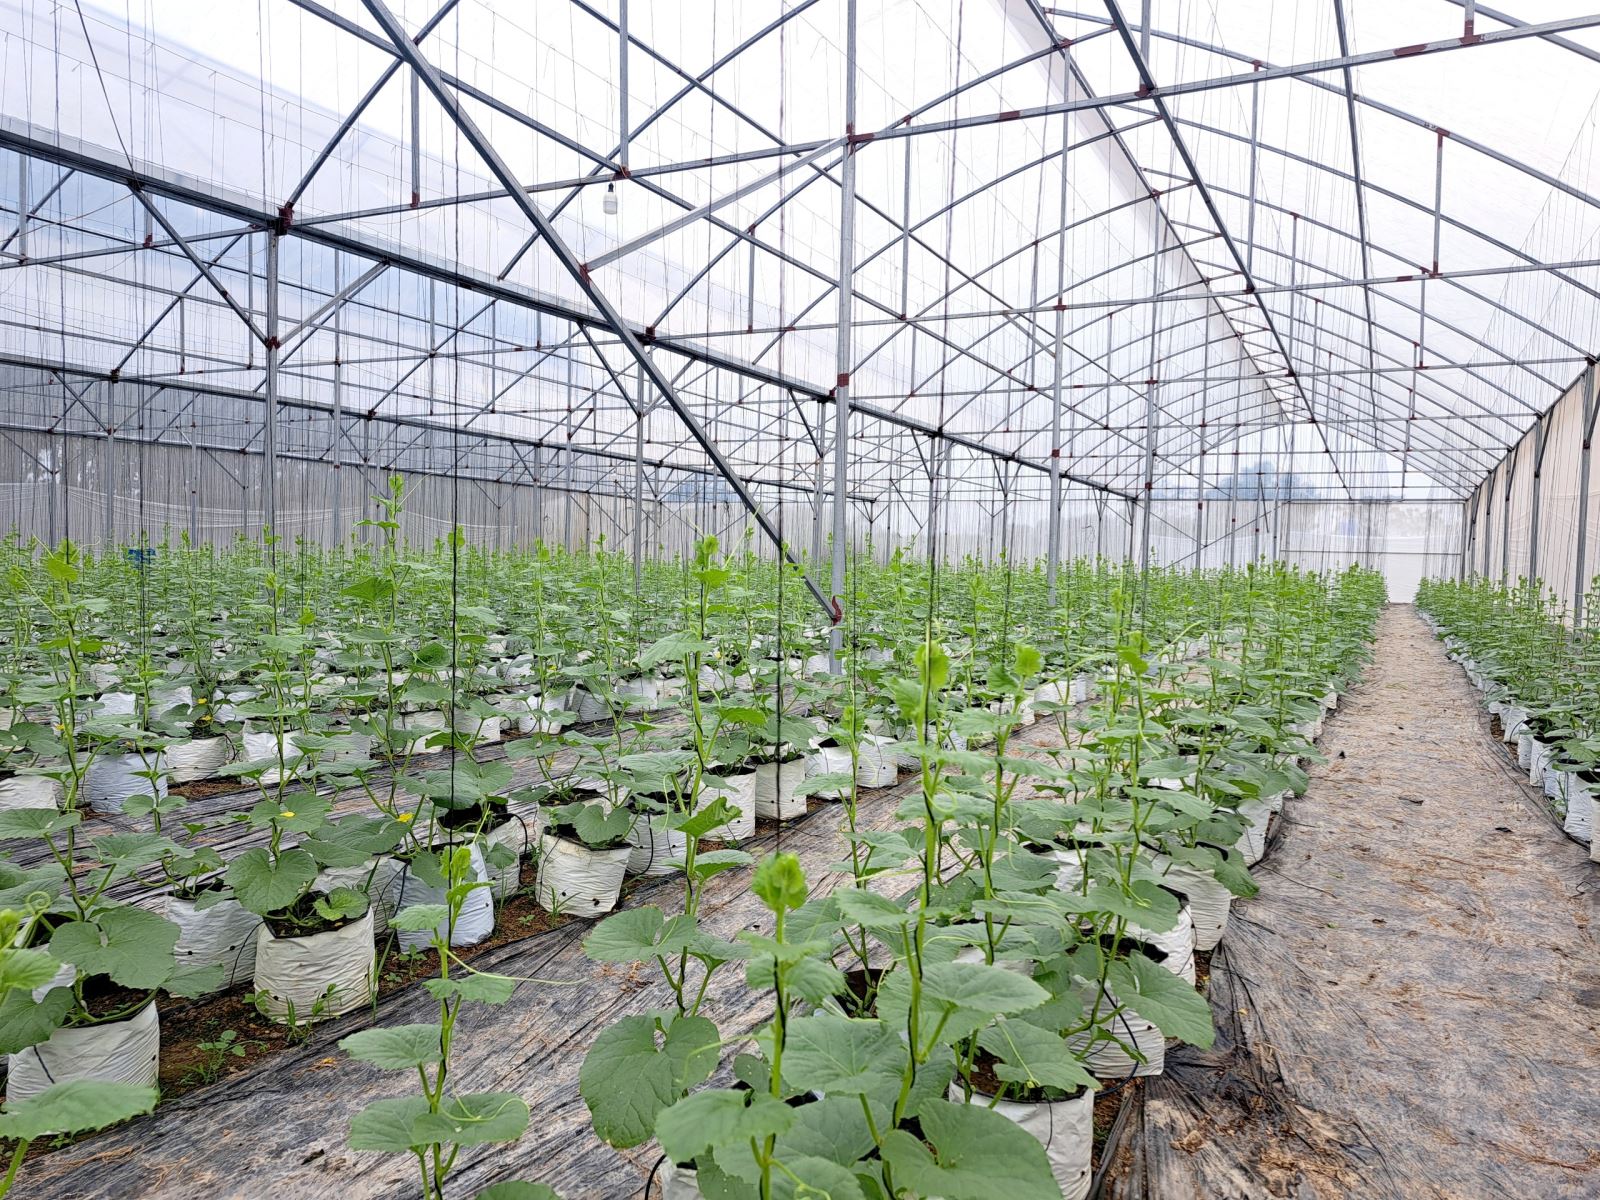 Áp dụng khoa học công nghệ cao vào sản xuất, vườn dưa nhà màng của Tổ hợp tác nông nghiệp Thuận Minh không bị ảnh hưởng của tác động môi trường, mang lại năng suất cao, cho thu nhập quanh năm.